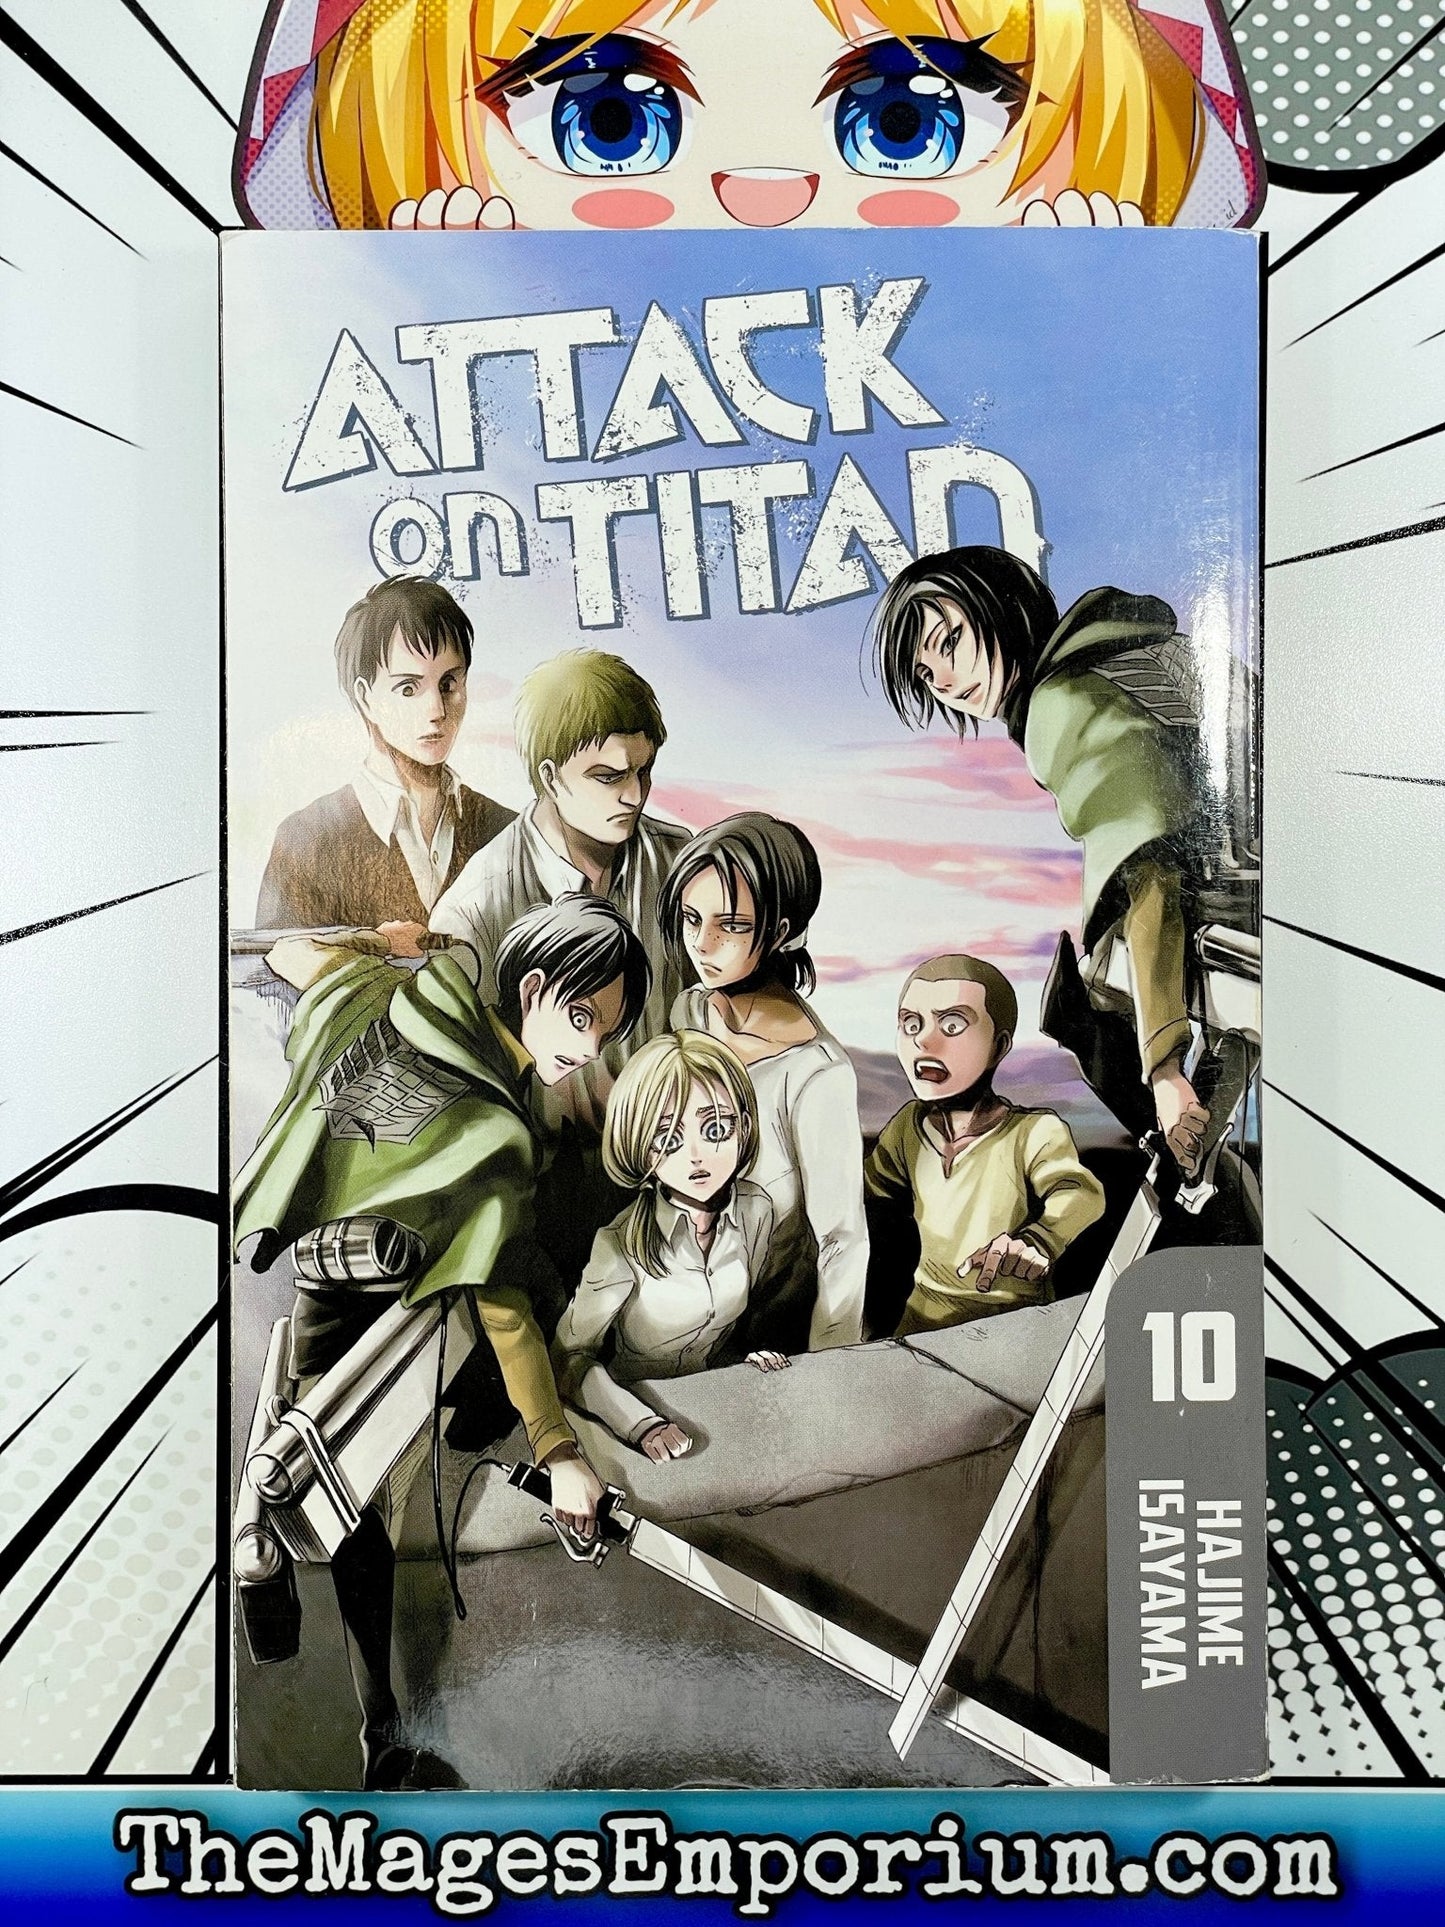 Attack on Titan Vol 10